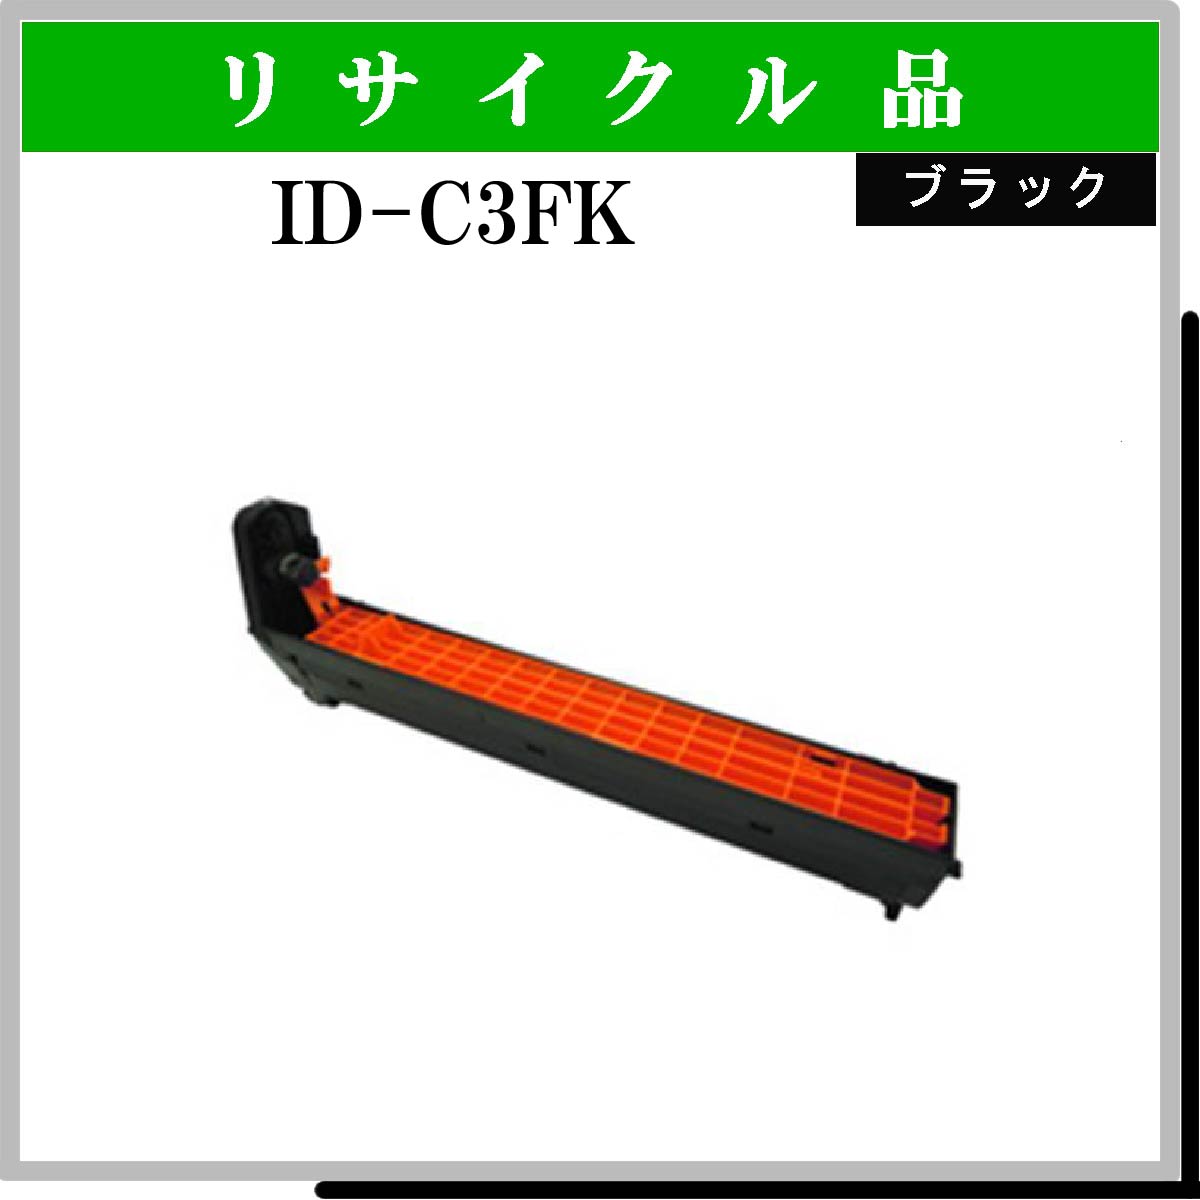 ID-C3FK